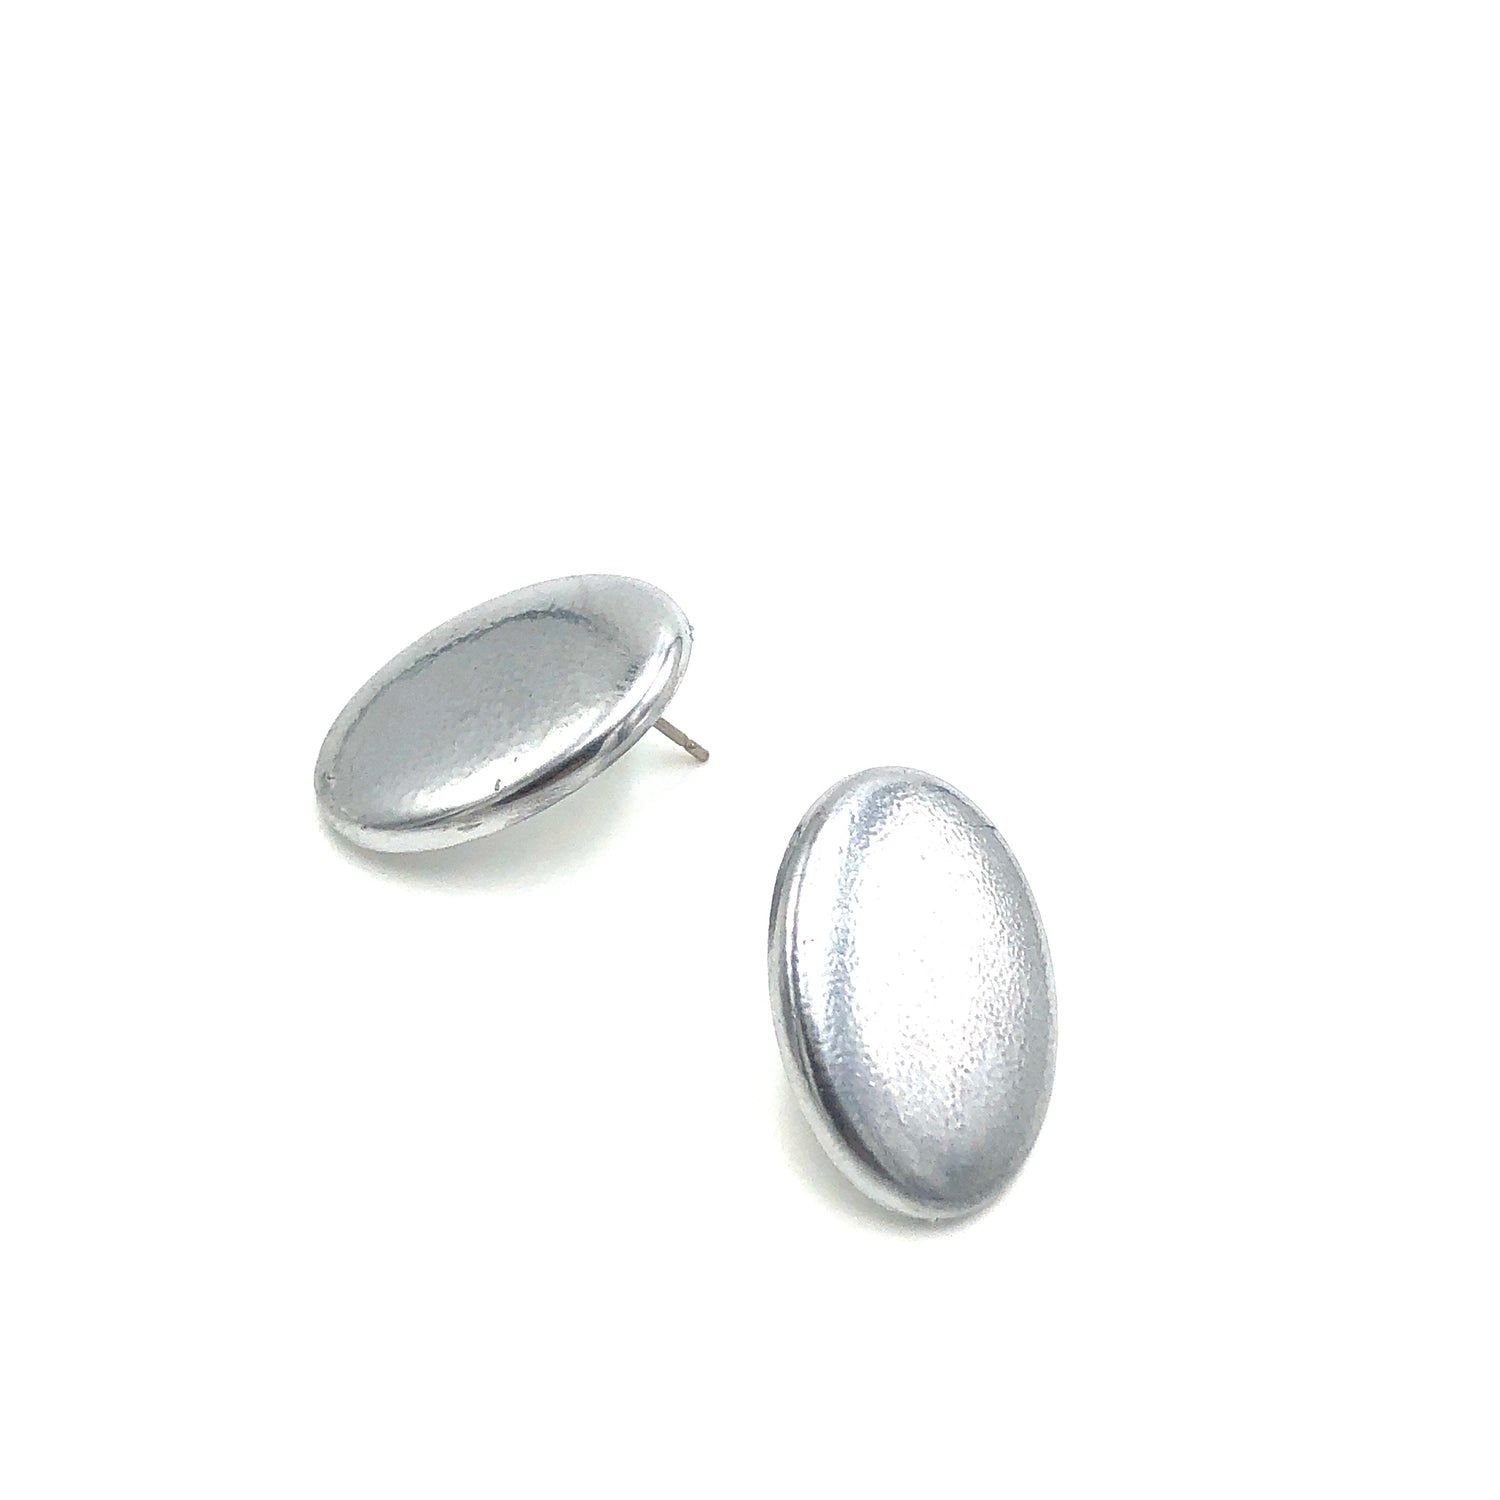 Shabby Metallic Silver Oval Stud Earrings